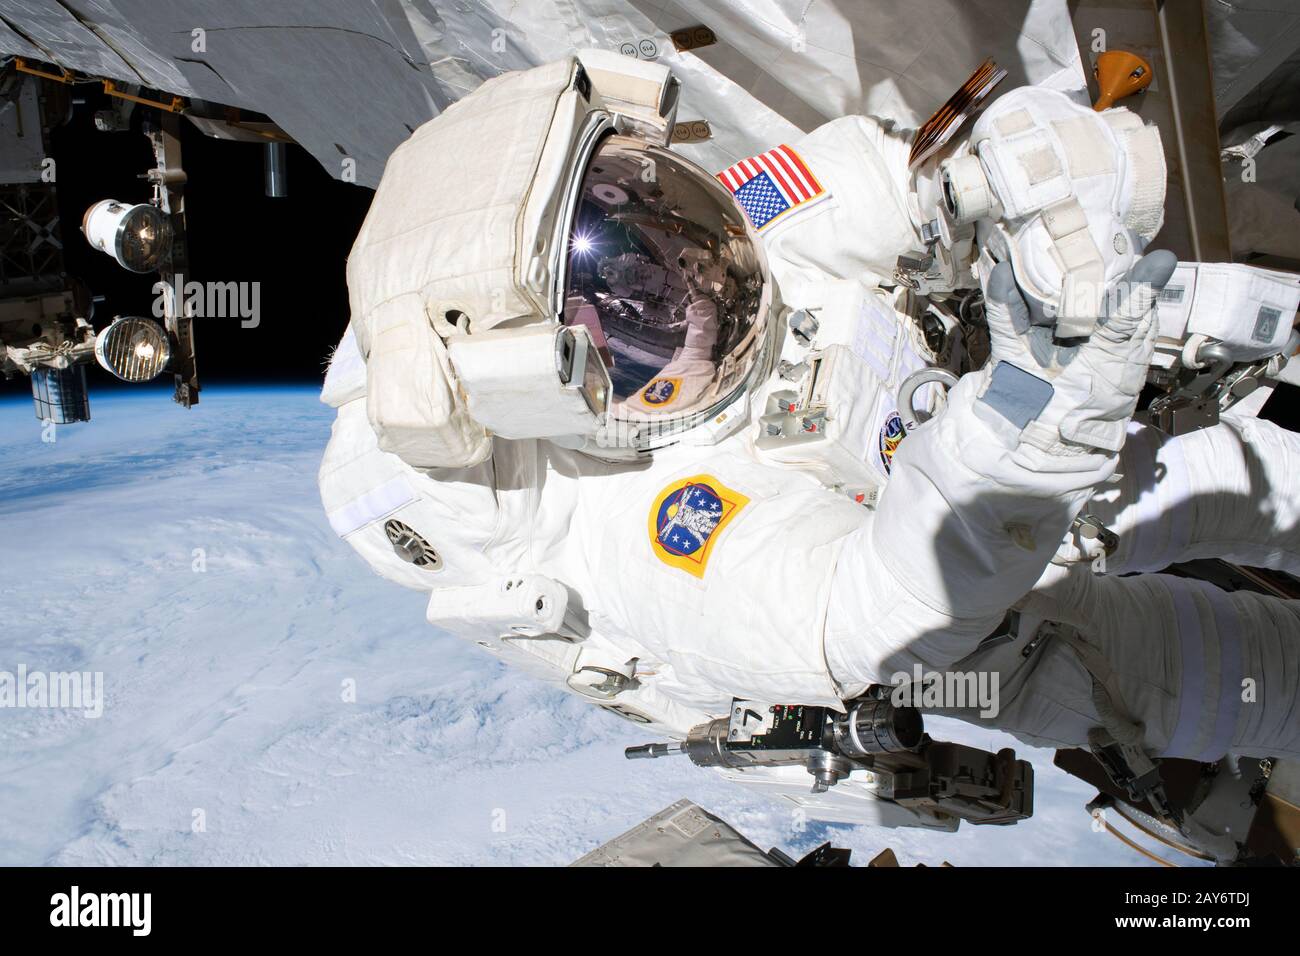 Un astronaute de la NASA se trouve dans la Station spatiale internationale. Planète Terre sert de magnifique arrière-plan. Cette image éditoriale est un document de la NASA Banque D'Images